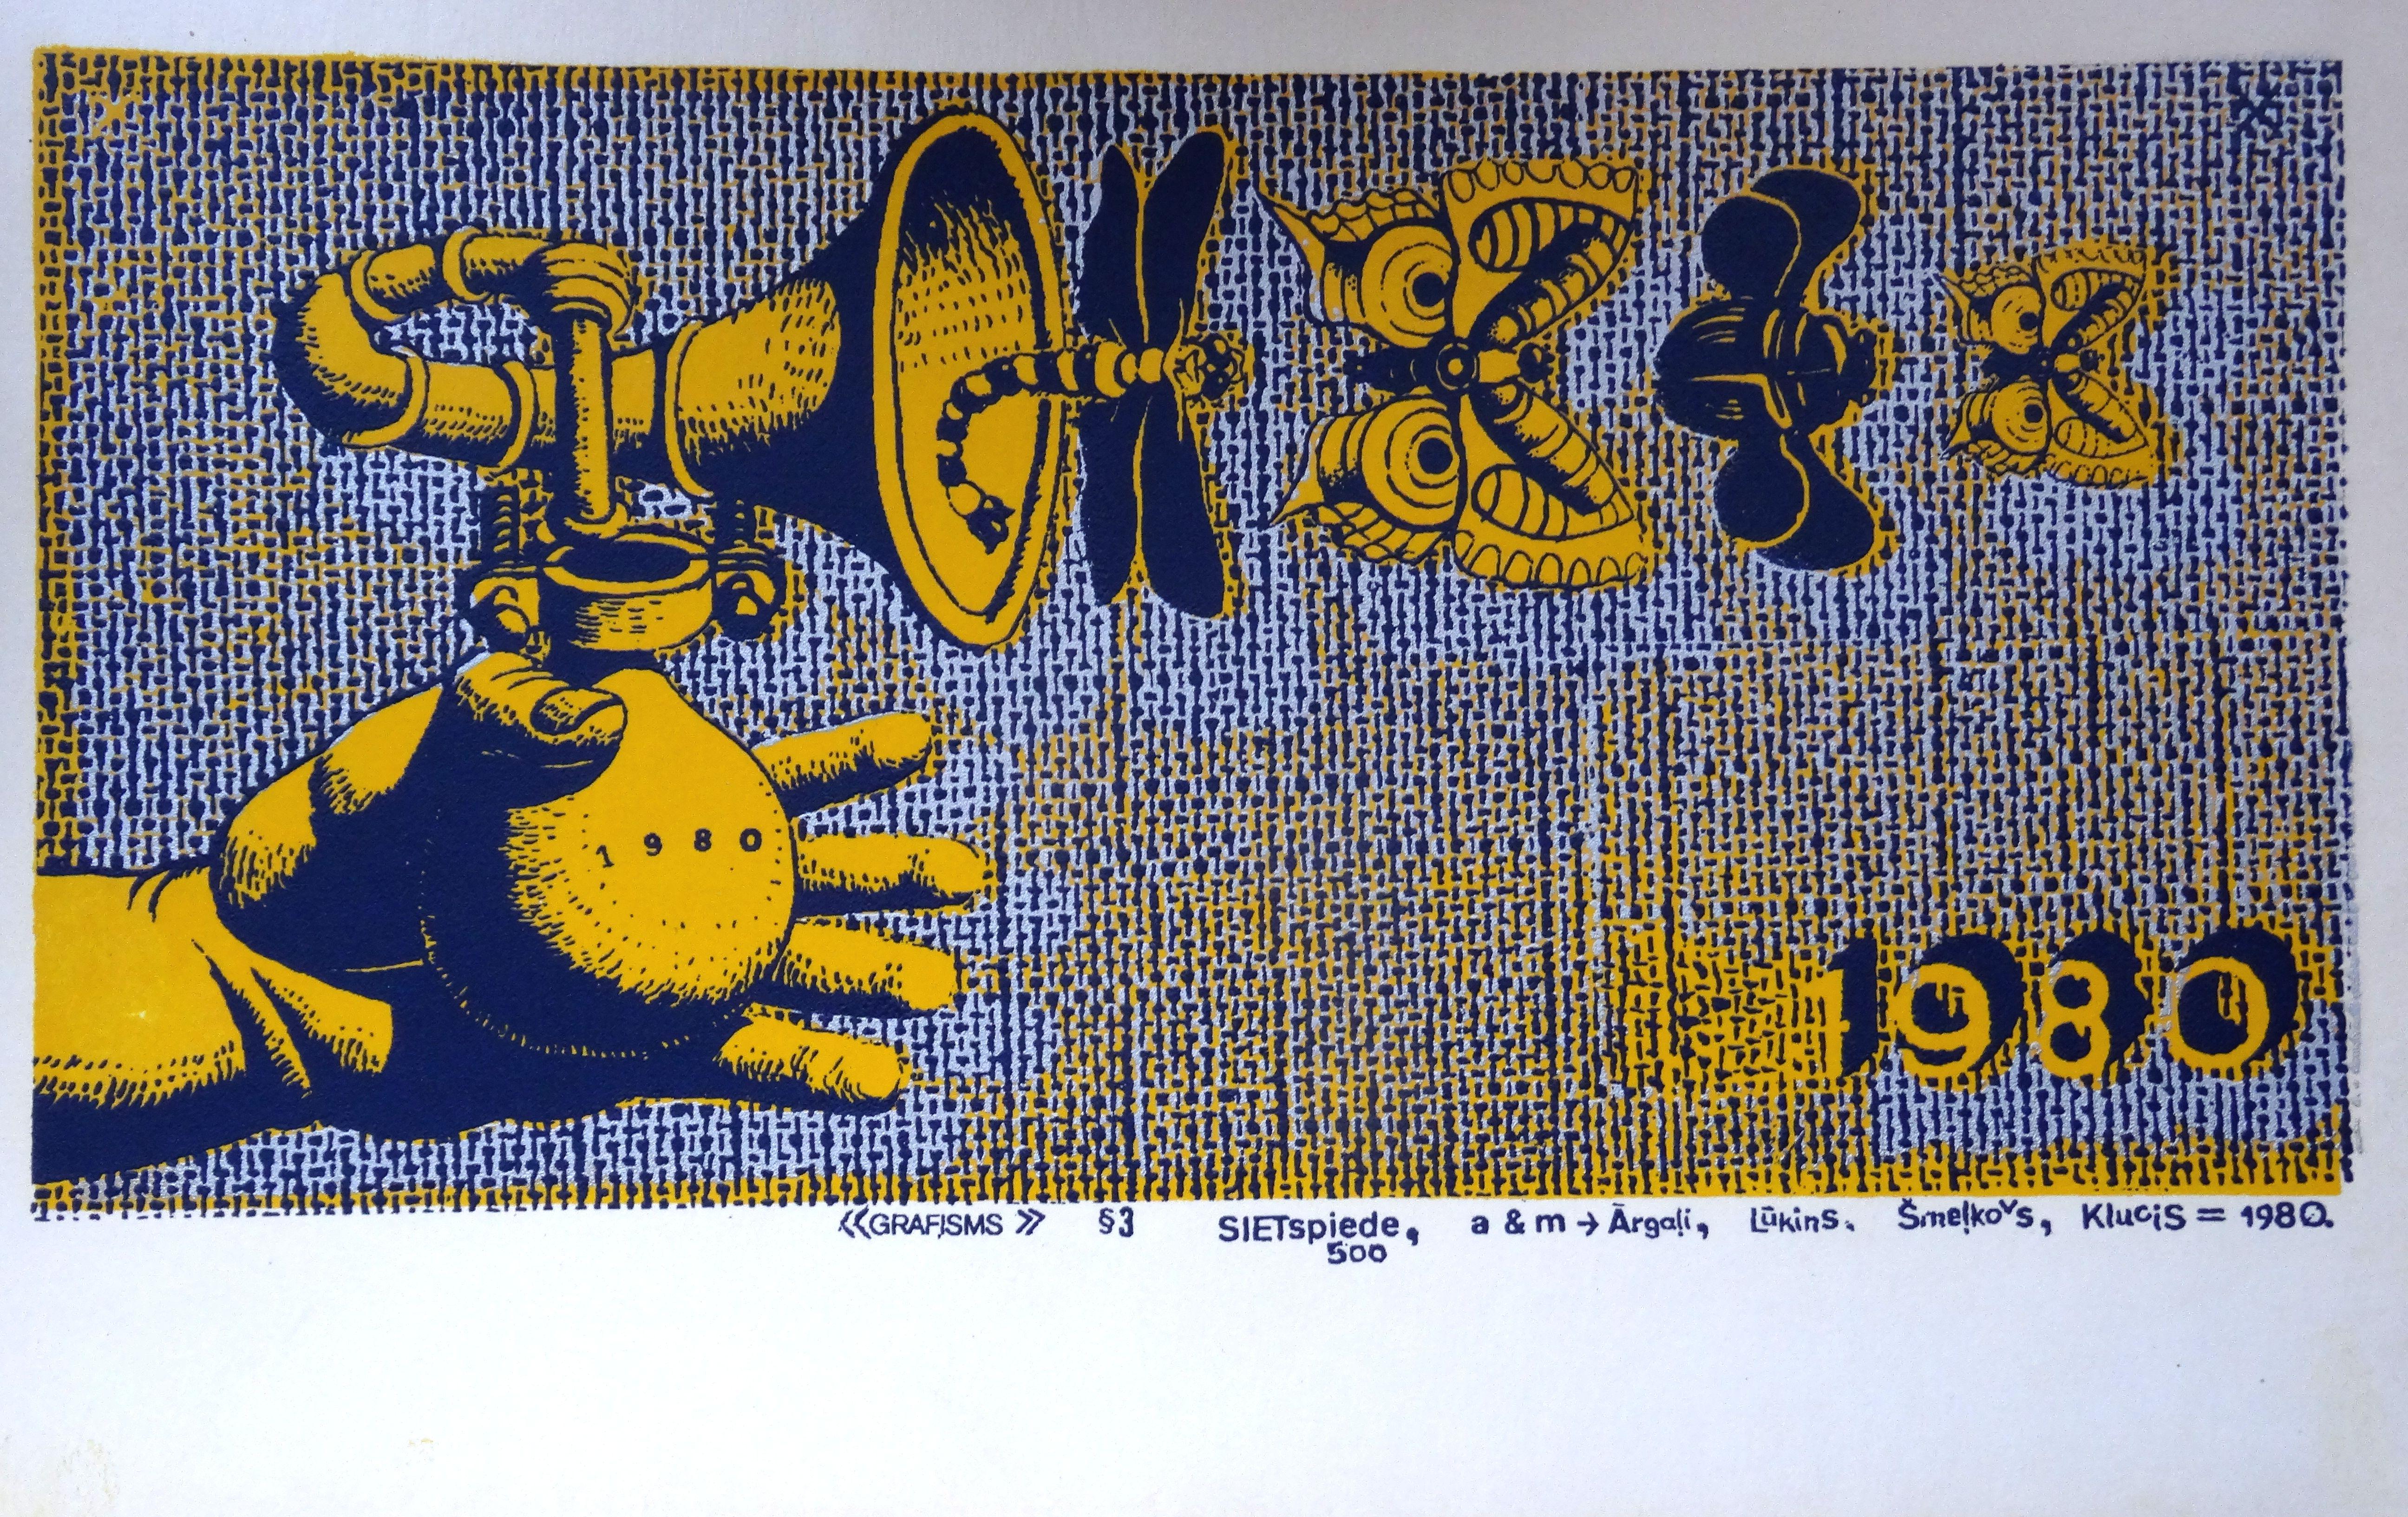 Graphisms & 3. 1980, papier, écran en soie, 15x28 cm - Print de Maris Argalis